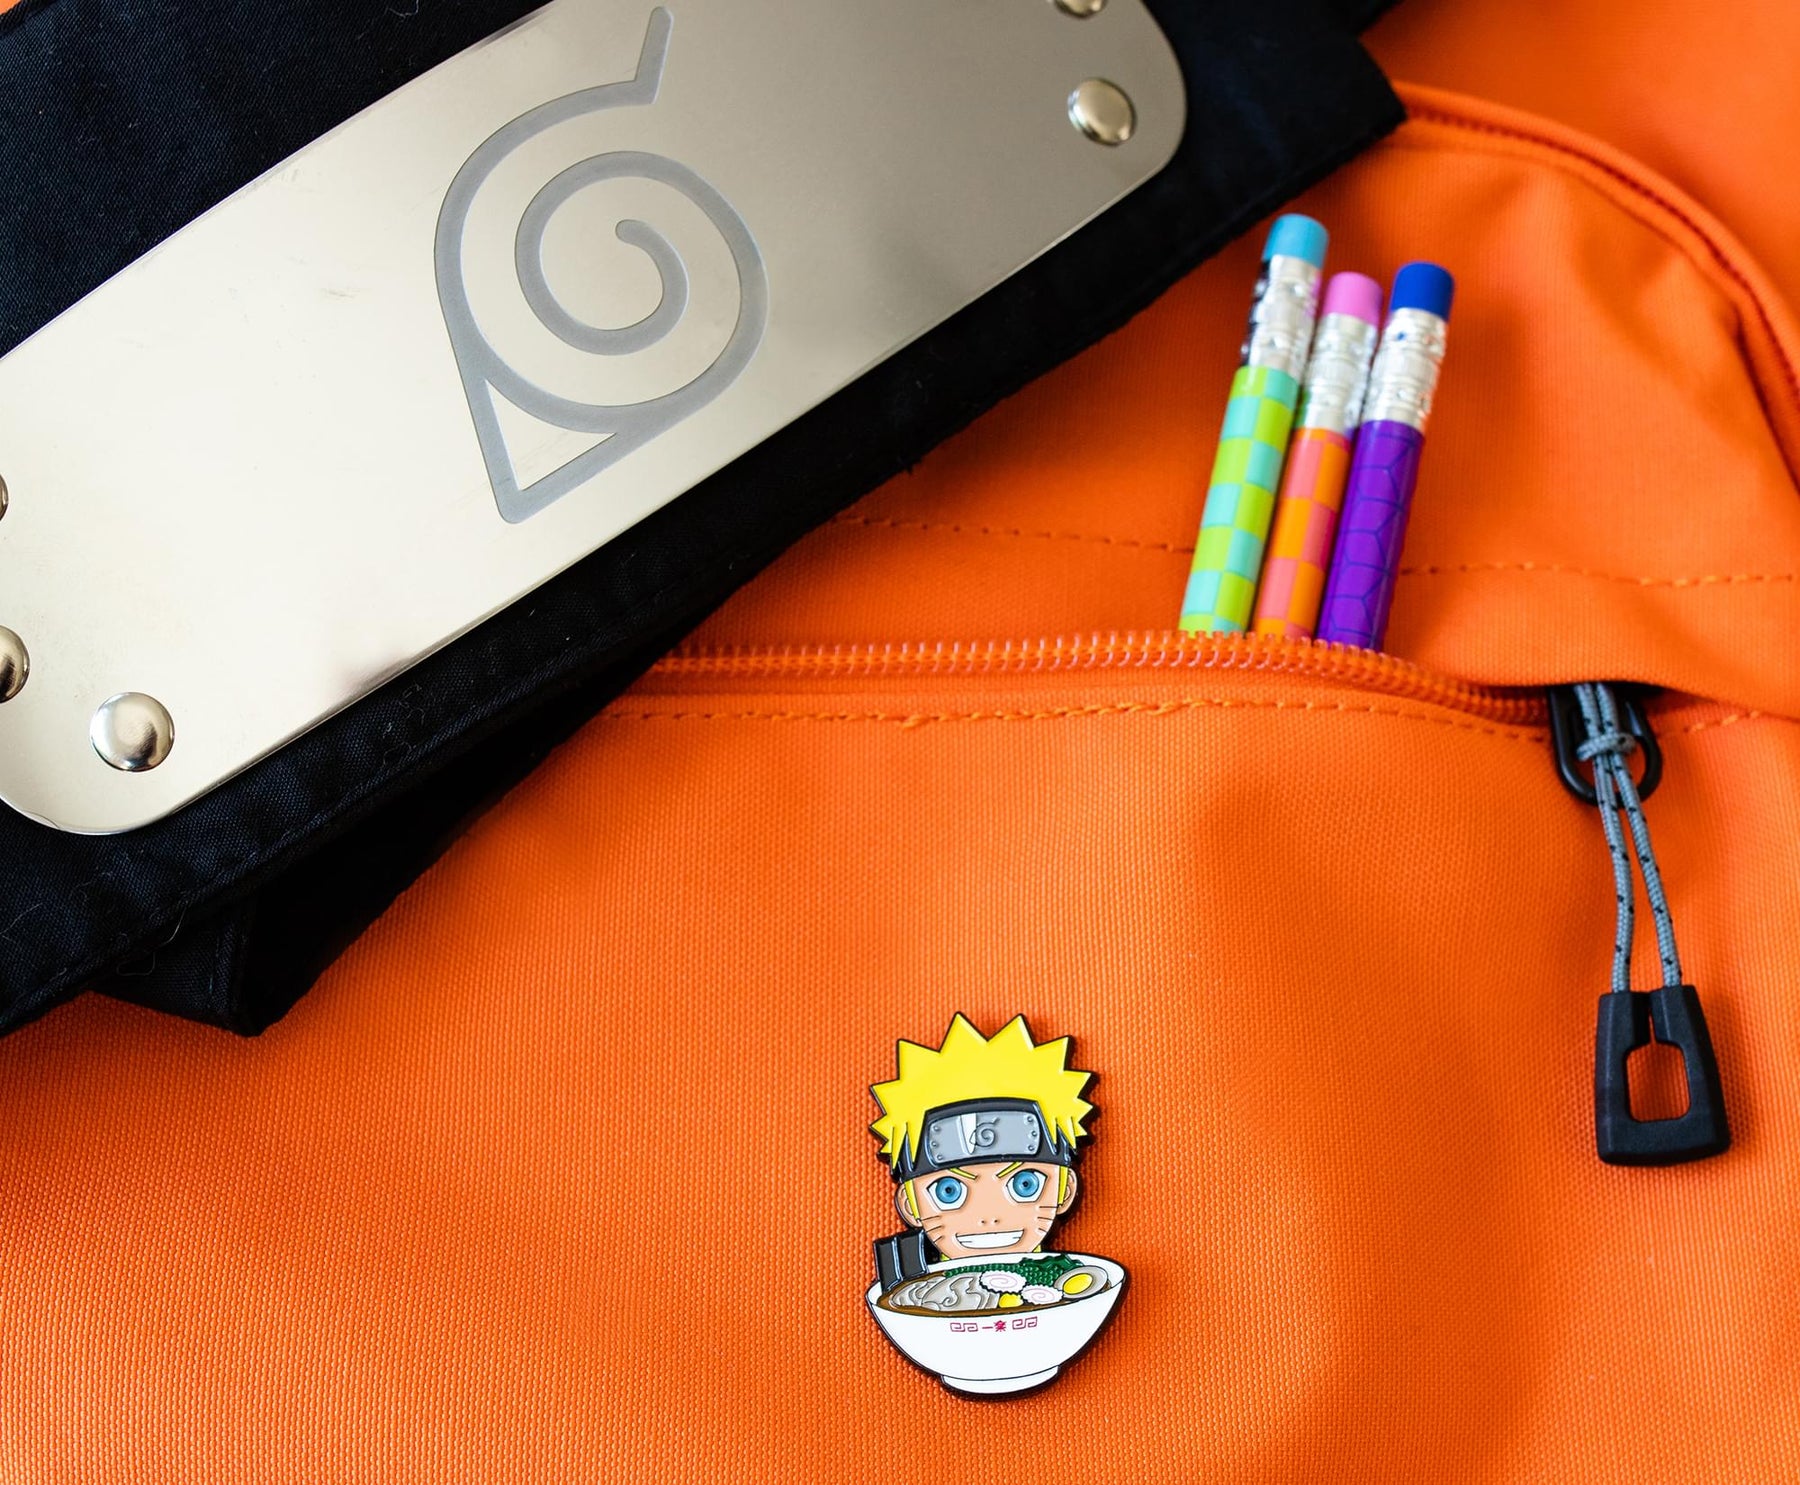 Naruto Shippuden Ichiraku Ramen Backpack